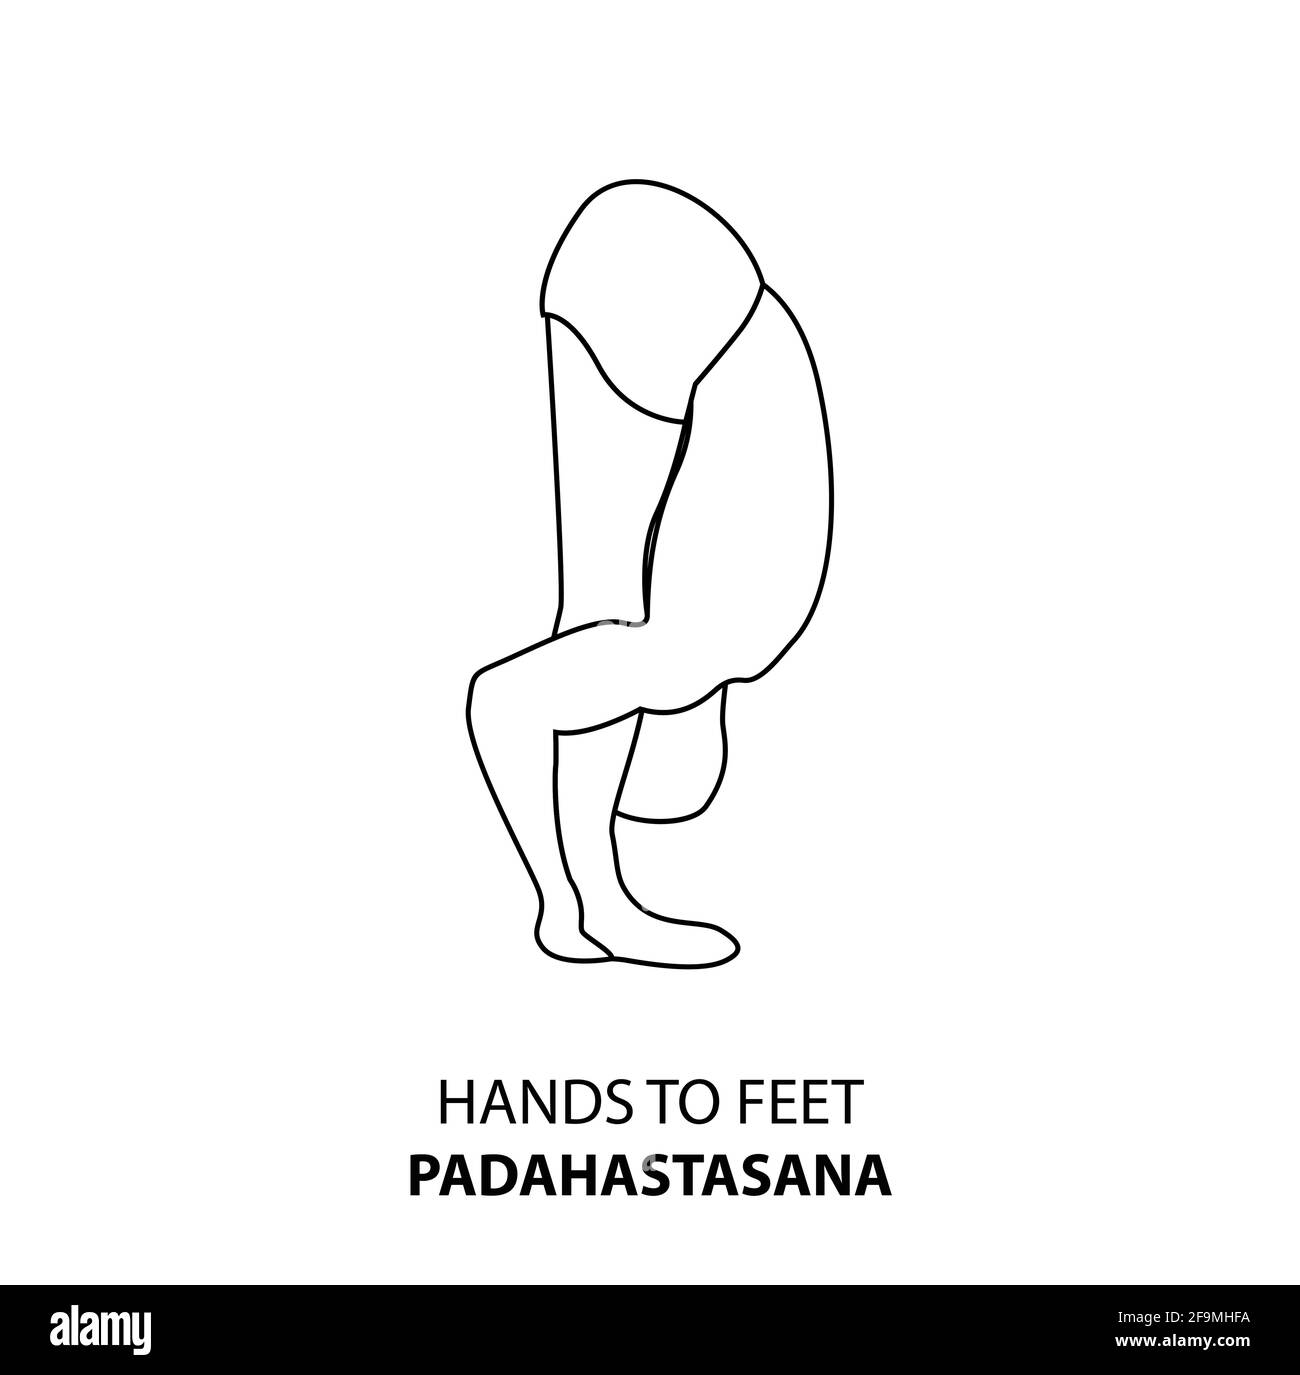 Homme pratiquant le yoga pose isolé contour Illustration. Homme debout entre les mains et les pieds pose, padahastasana, icône de la ligne de Yoga Asana Illustration de Vecteur